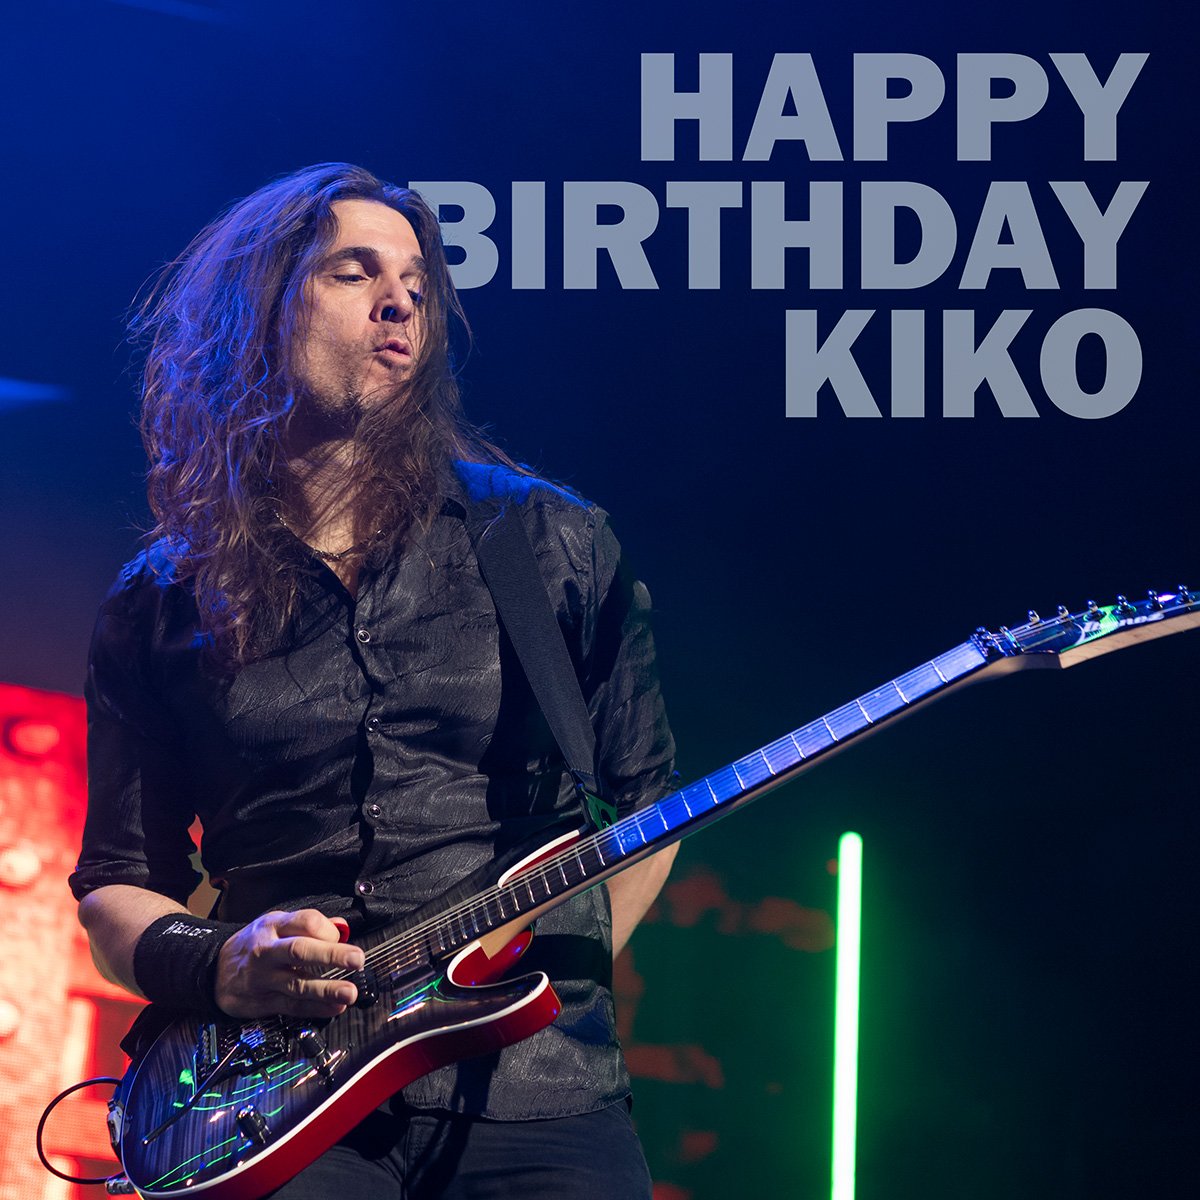 Happy Birthday Kiko!